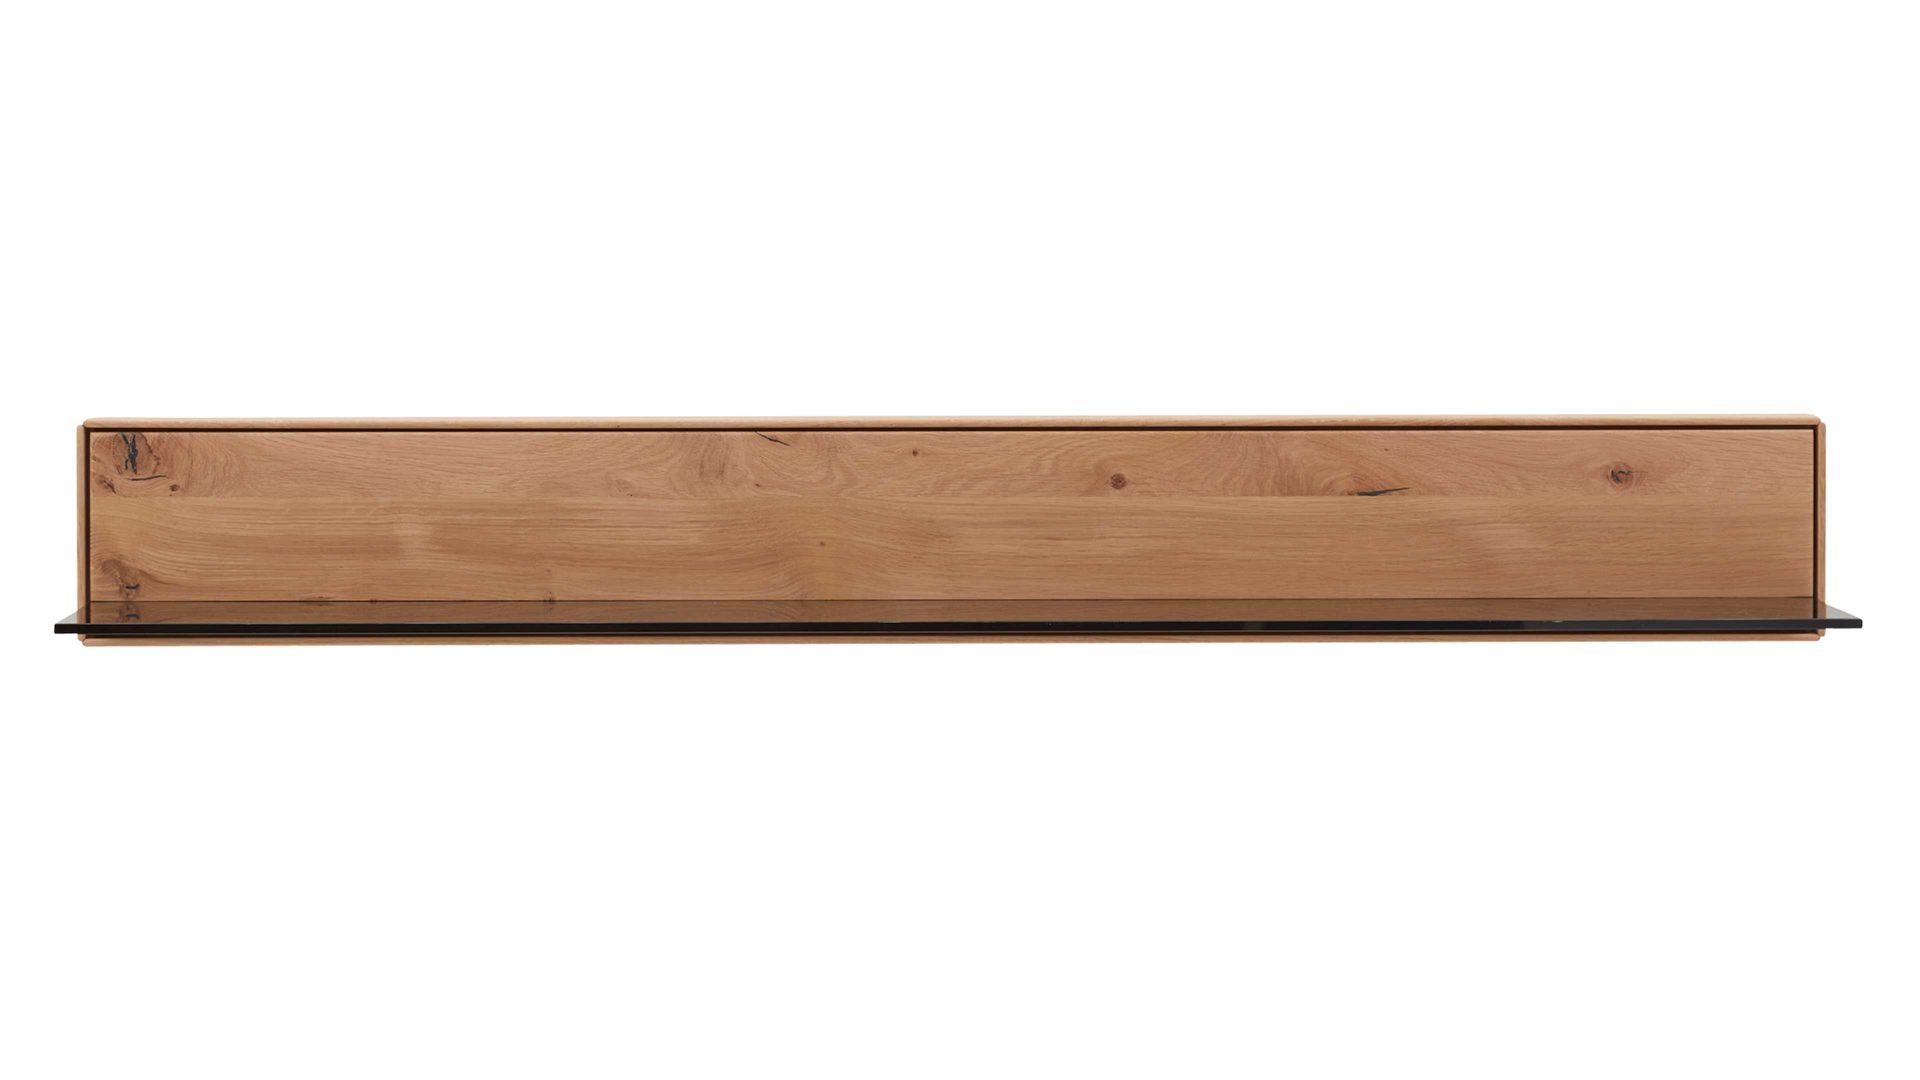 Wandregal Interliving aus Holz in Holzfarben Interliving Wohnzimmer Serie 2020 - Wandboard 151852 Asteiche bianco – Länge ca. 182 cm